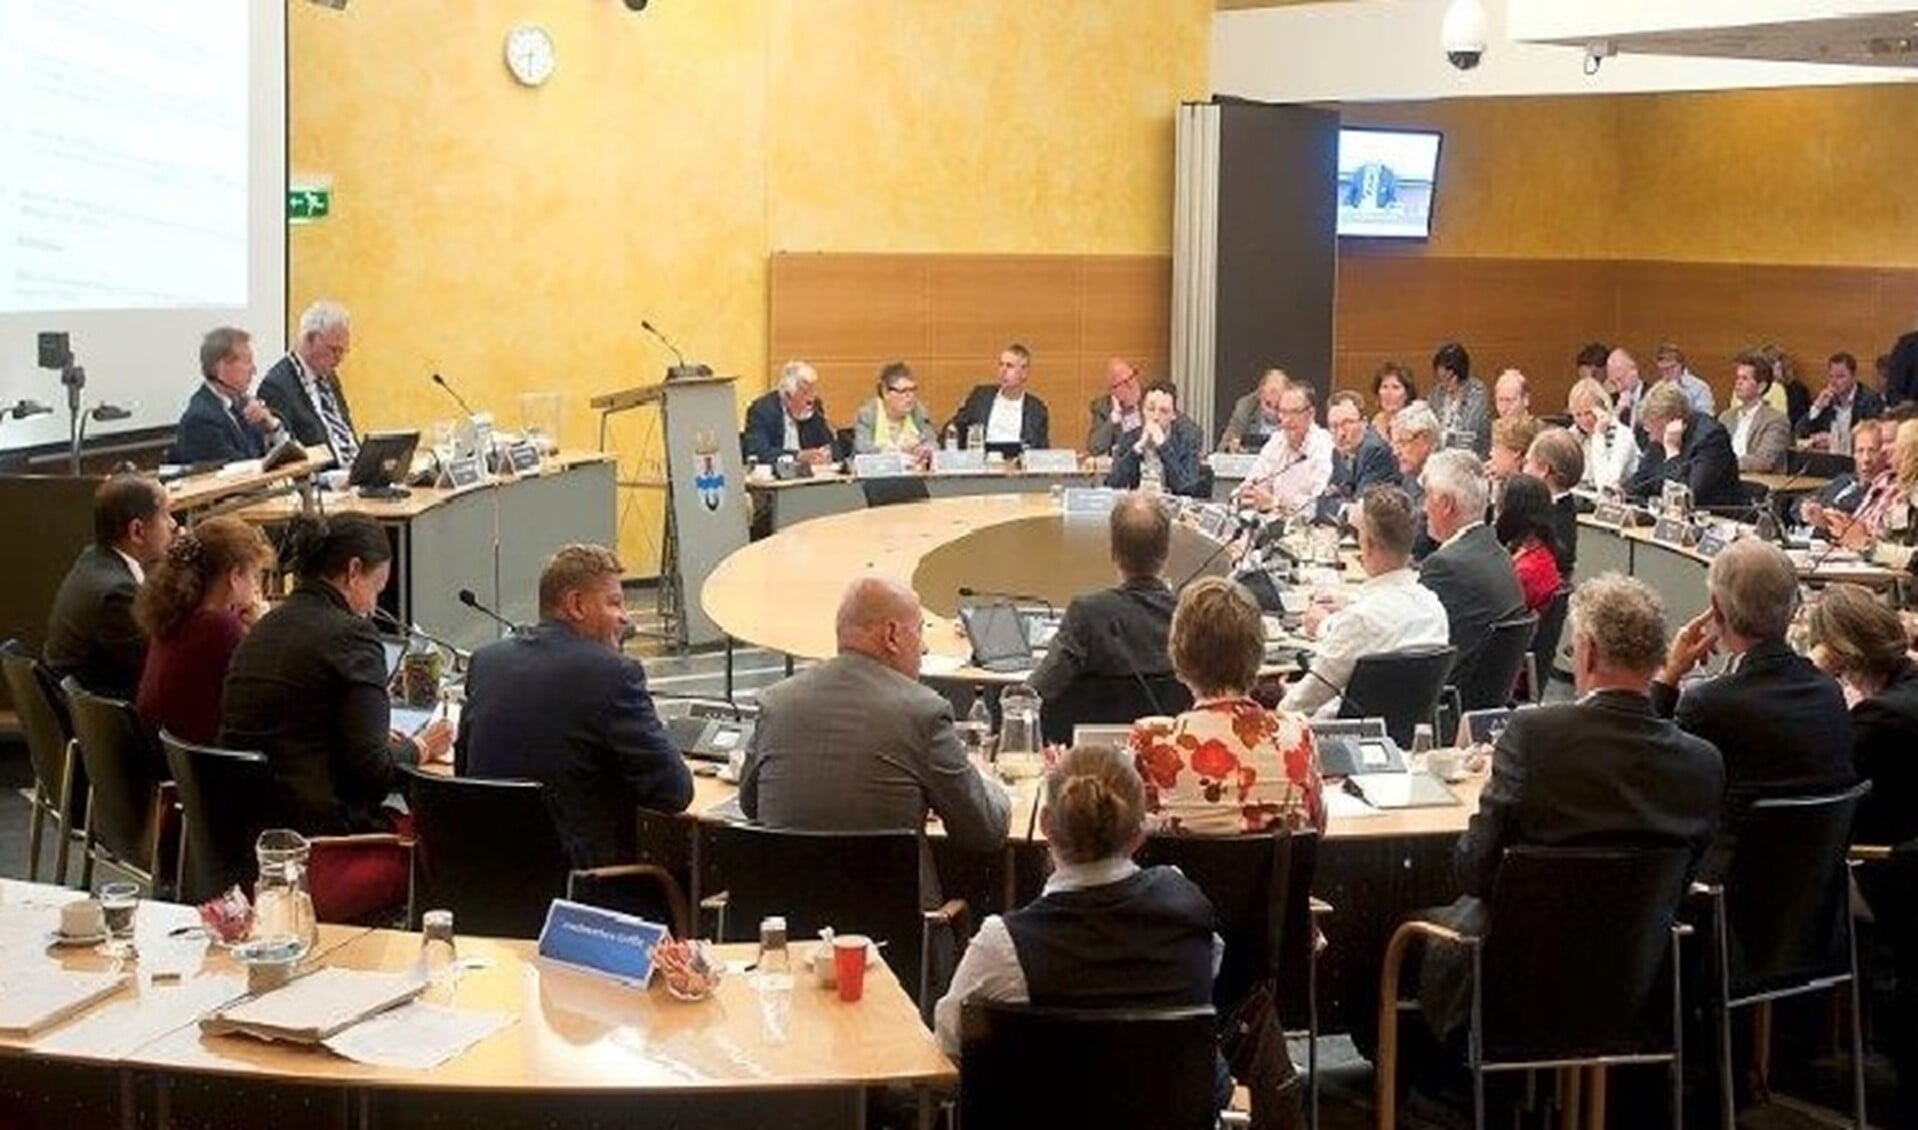 De raad bijeen in vergadering (foto: Michel Groen).